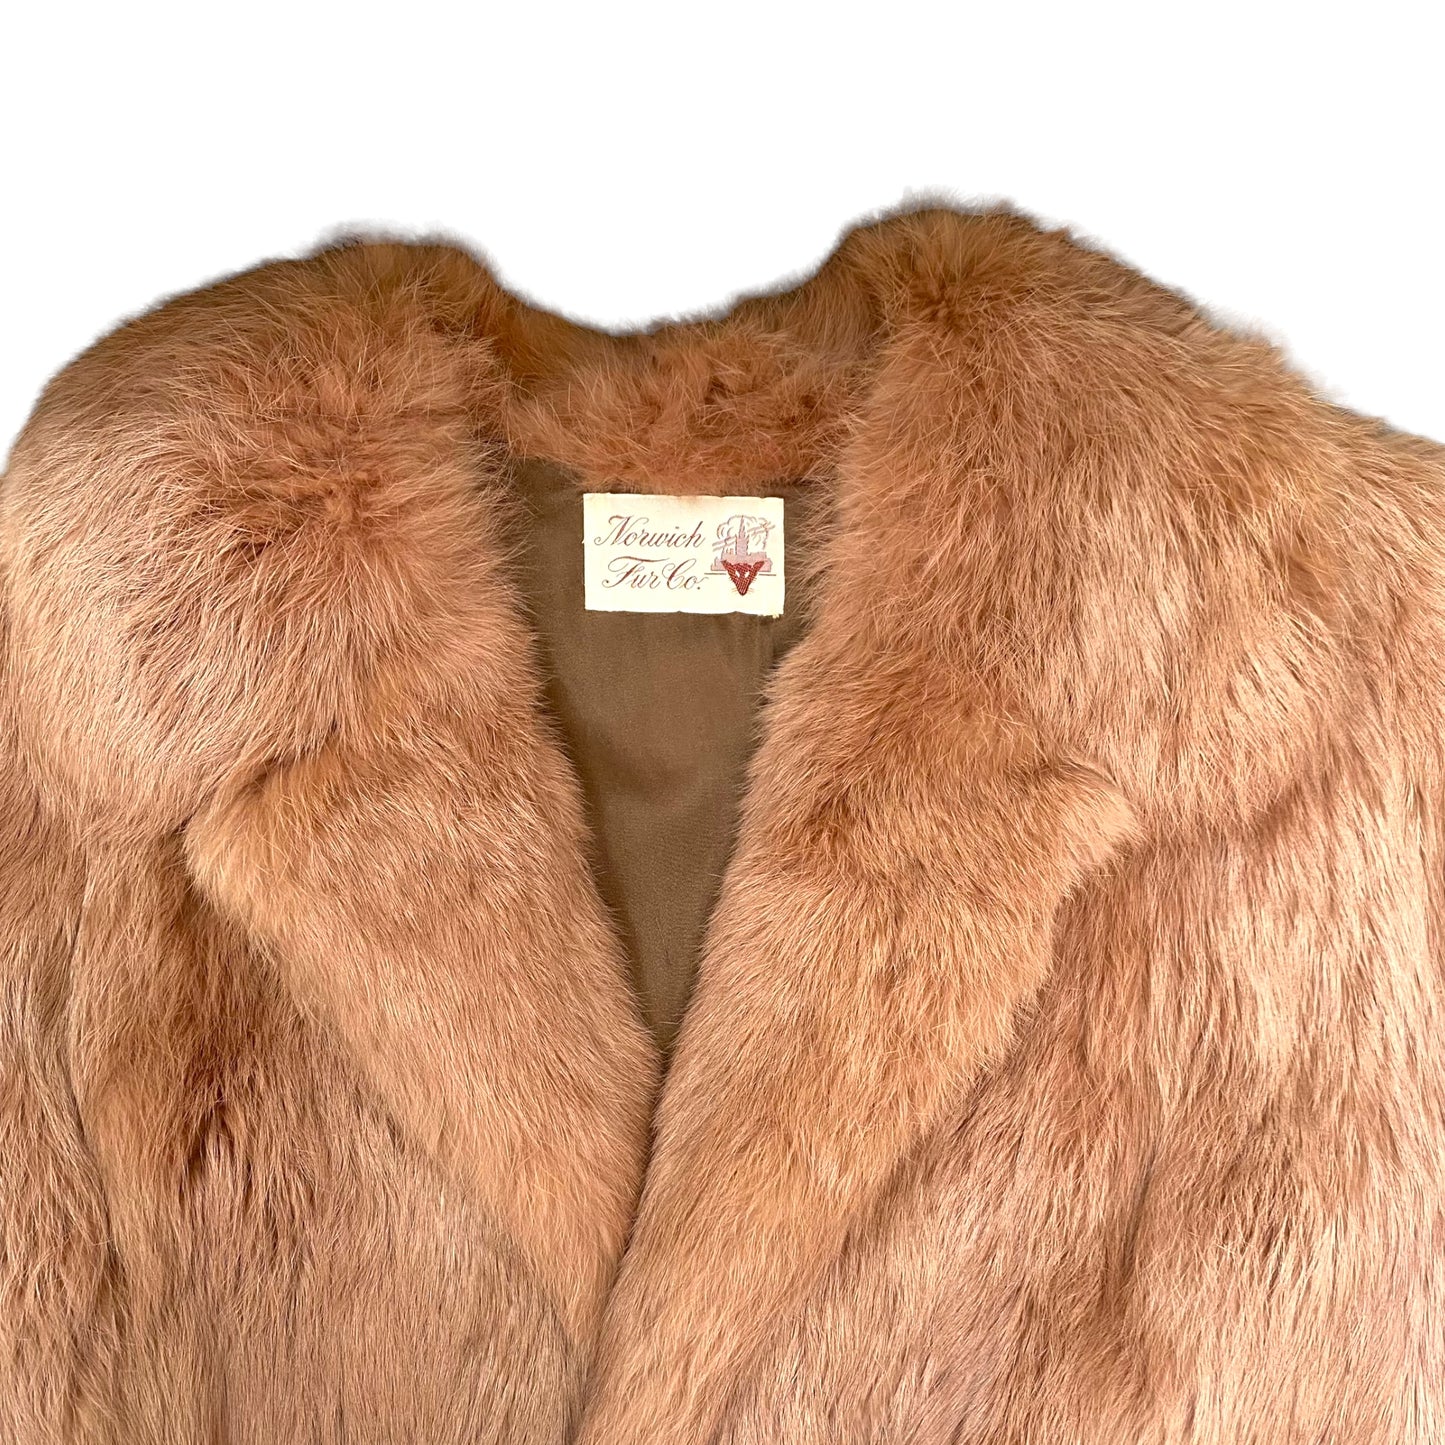 Vintage Fur Coat Jacket by Norwich Fur Co. (M)